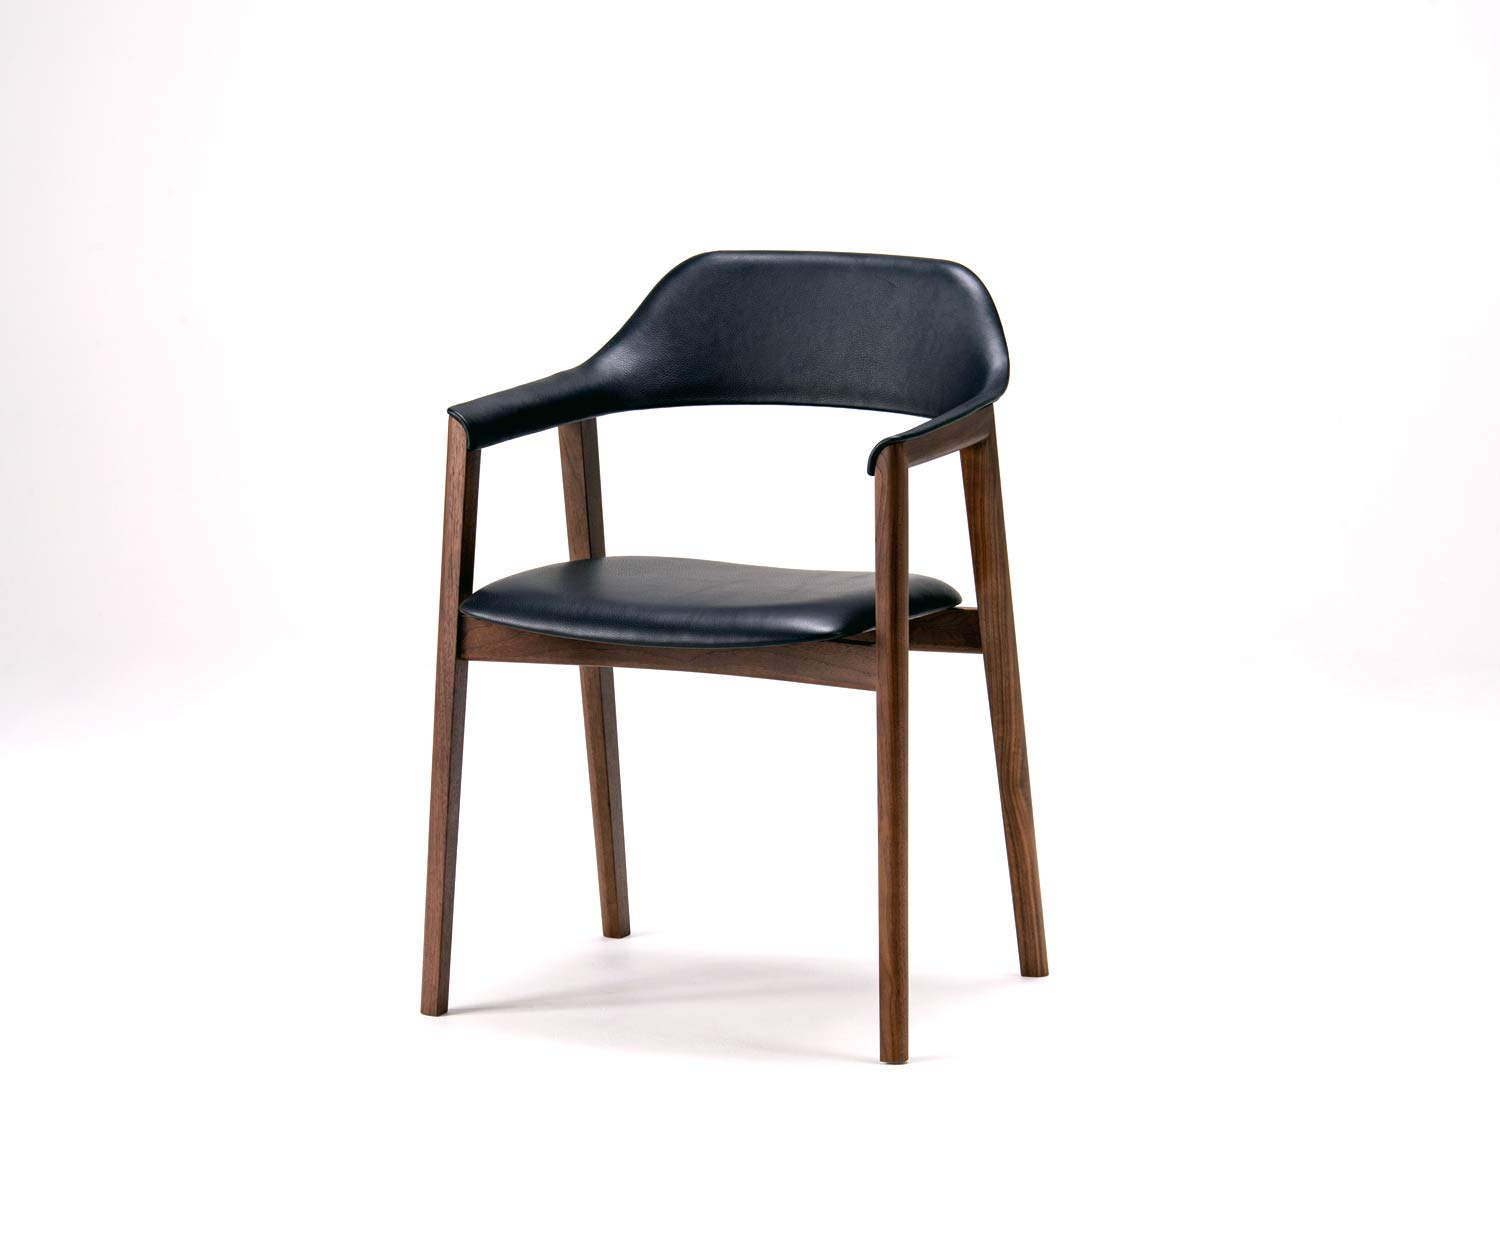 Moderne Conde House design fauteuil geplaatst bij de Ten tafel in de eetkamer